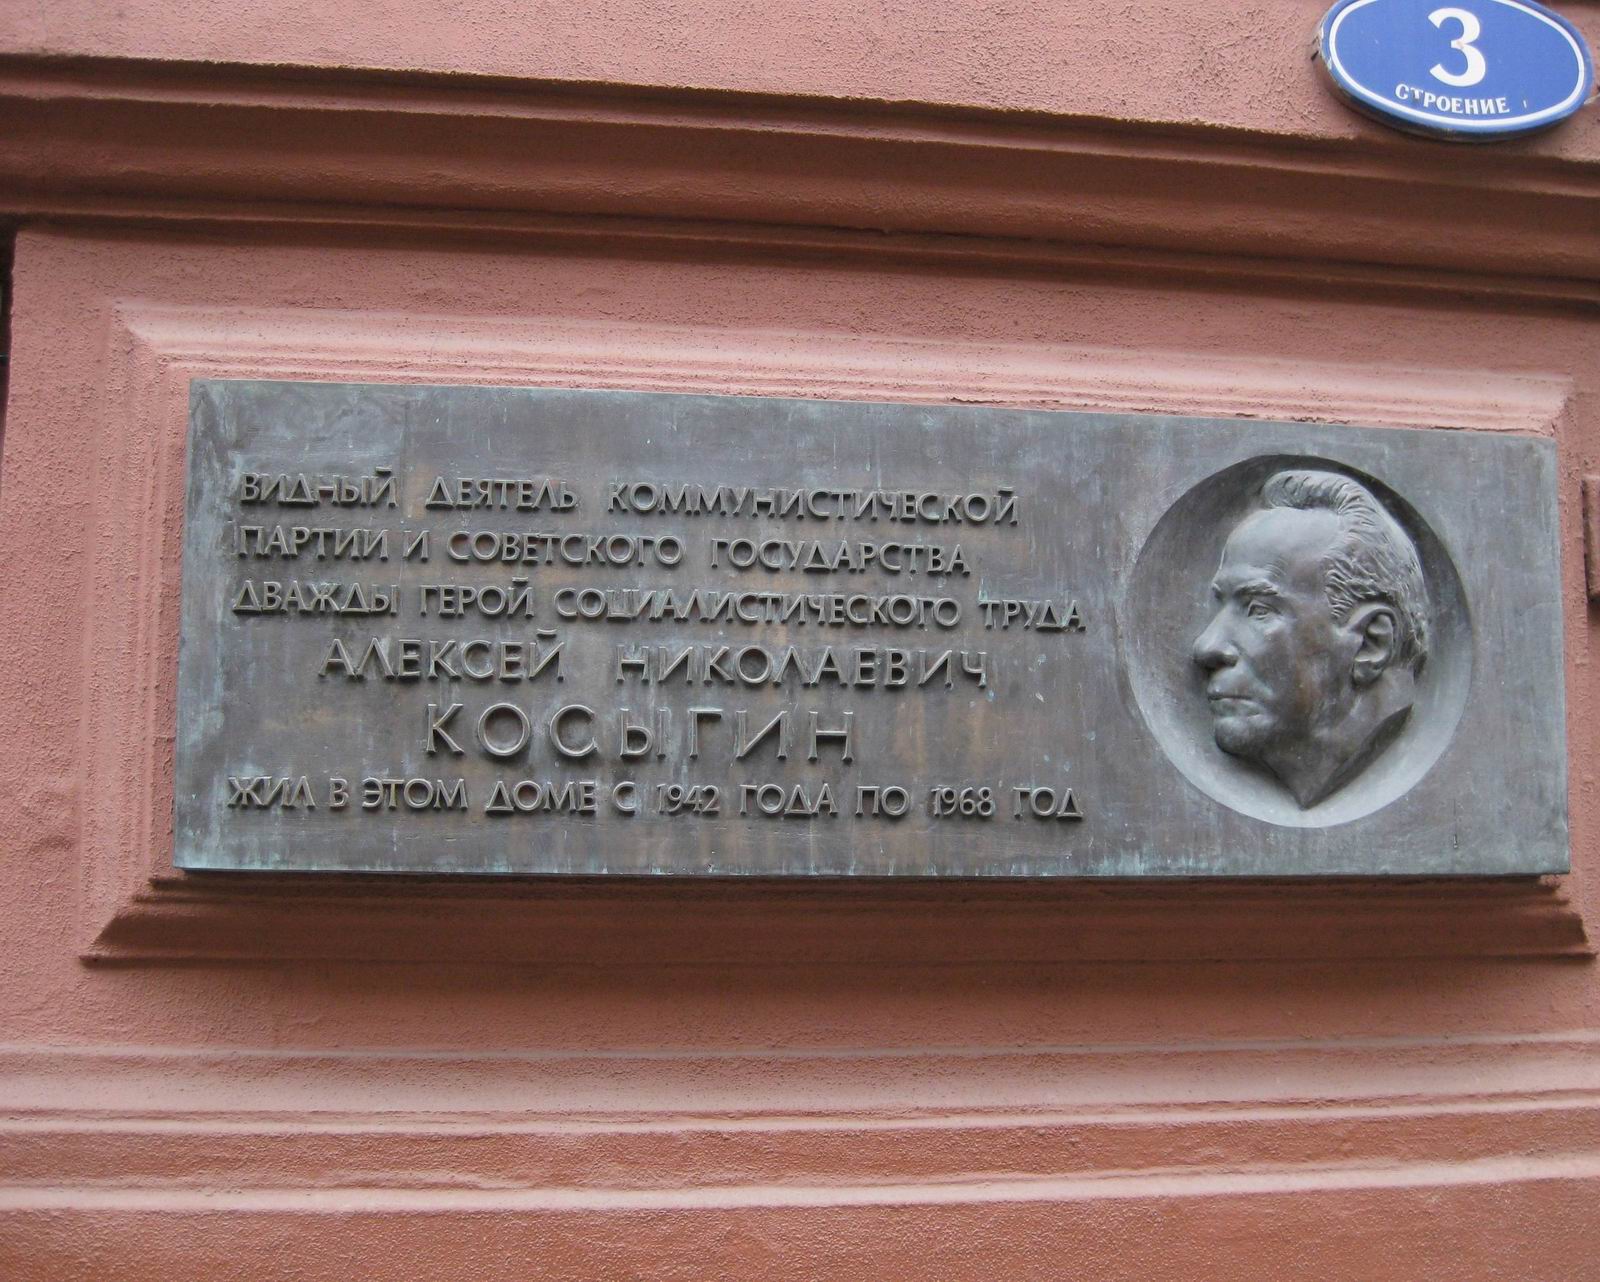 Мемориальная доска Косыгину А.Н. (1904–1980), ск. Ю.Г.Орехов, арх. Г.В.Макаревич, в Романовом переулке, дом 3, открыта 30.11.1982.